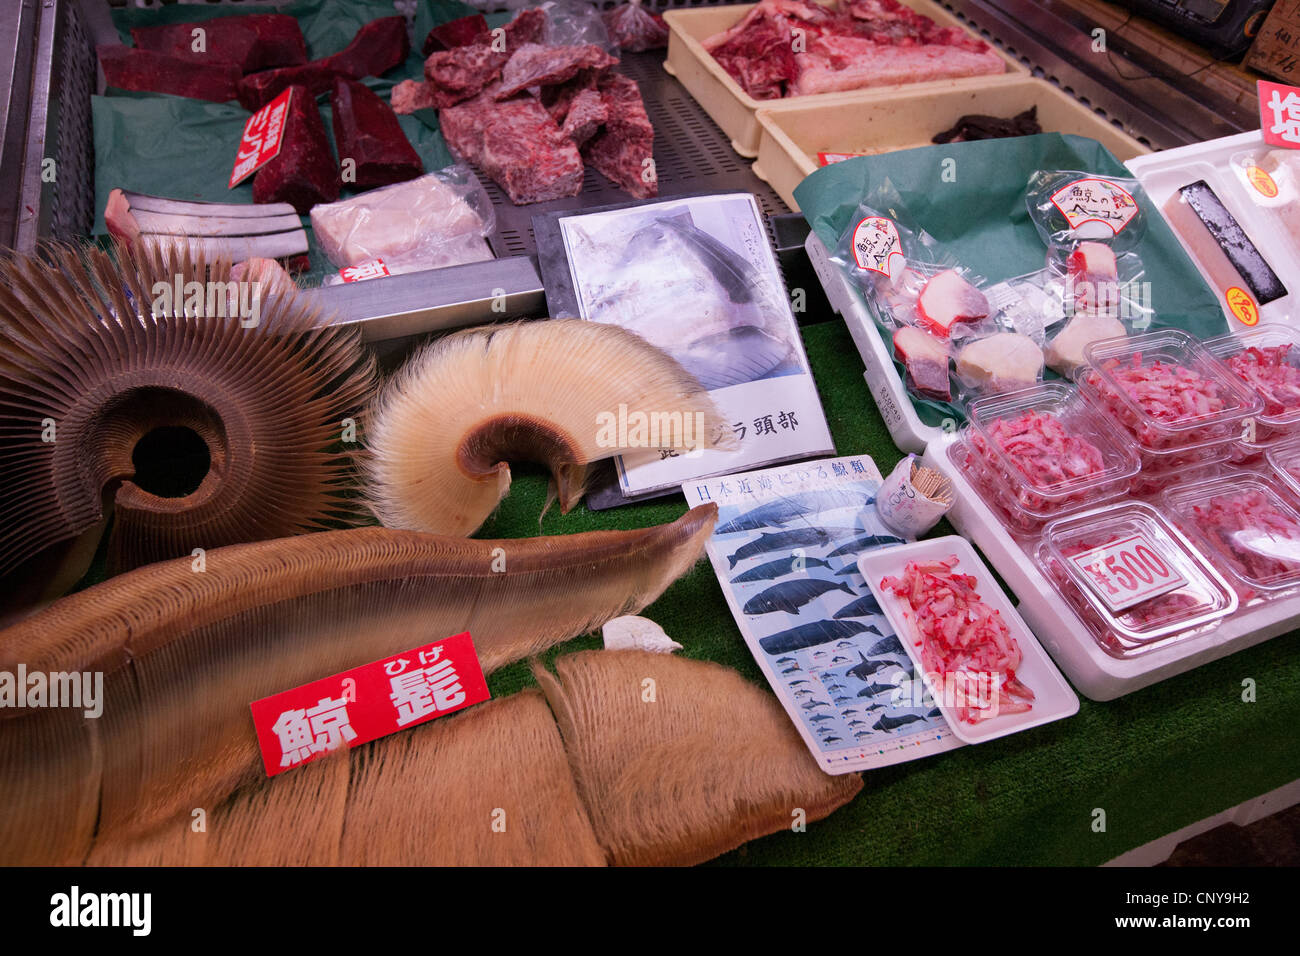 La viande de baleine, et sous-produits des baleines sur l'affichage, à l'intérieur du marché aux poissons, à Shiogama Shiogama, ville près de Ishinomaki, au Japon. Banque D'Images